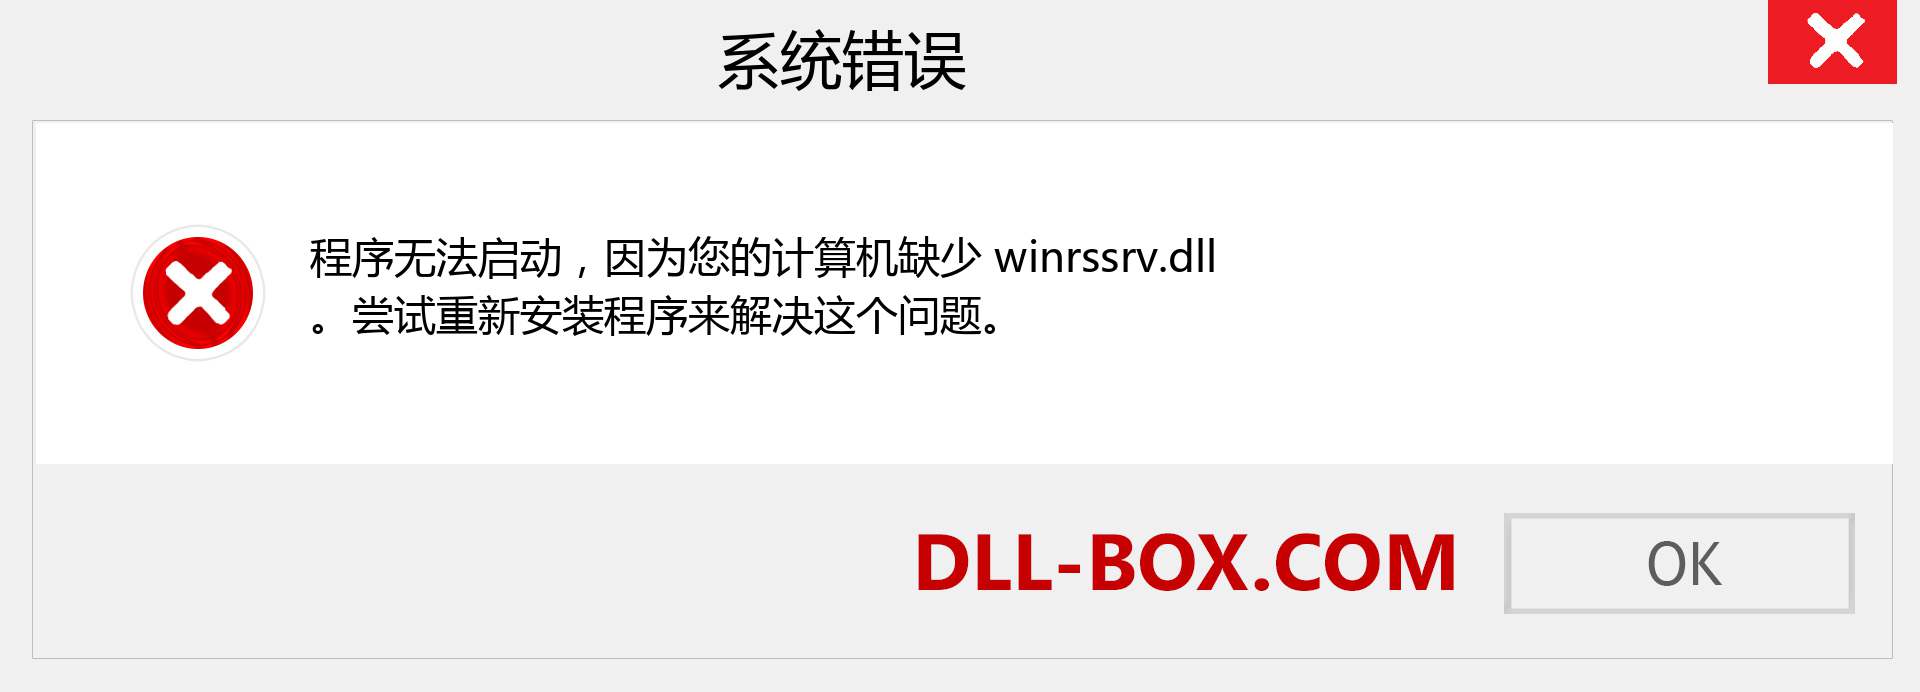 winrssrv.dll 文件丢失？。 适用于 Windows 7、8、10 的下载 - 修复 Windows、照片、图像上的 winrssrv dll 丢失错误